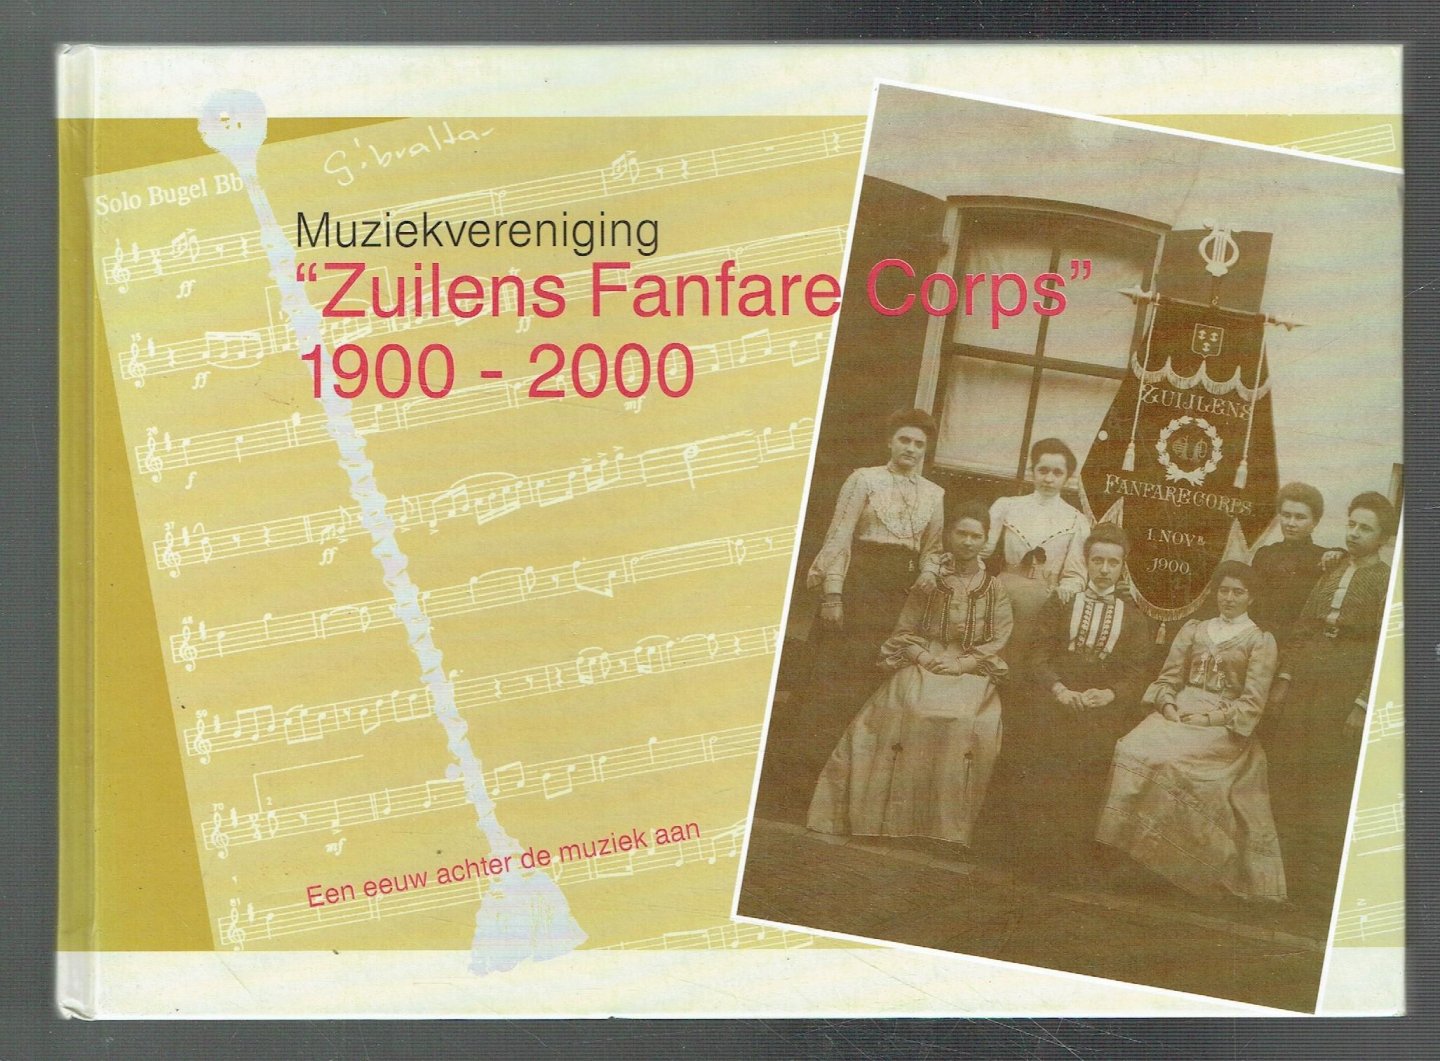 Stegers, Ted & Gerrit Verweij - Muziekvereniging Zuilens Fanfare Corps, een eeuw achter de muziek aan, 1900 - 2000